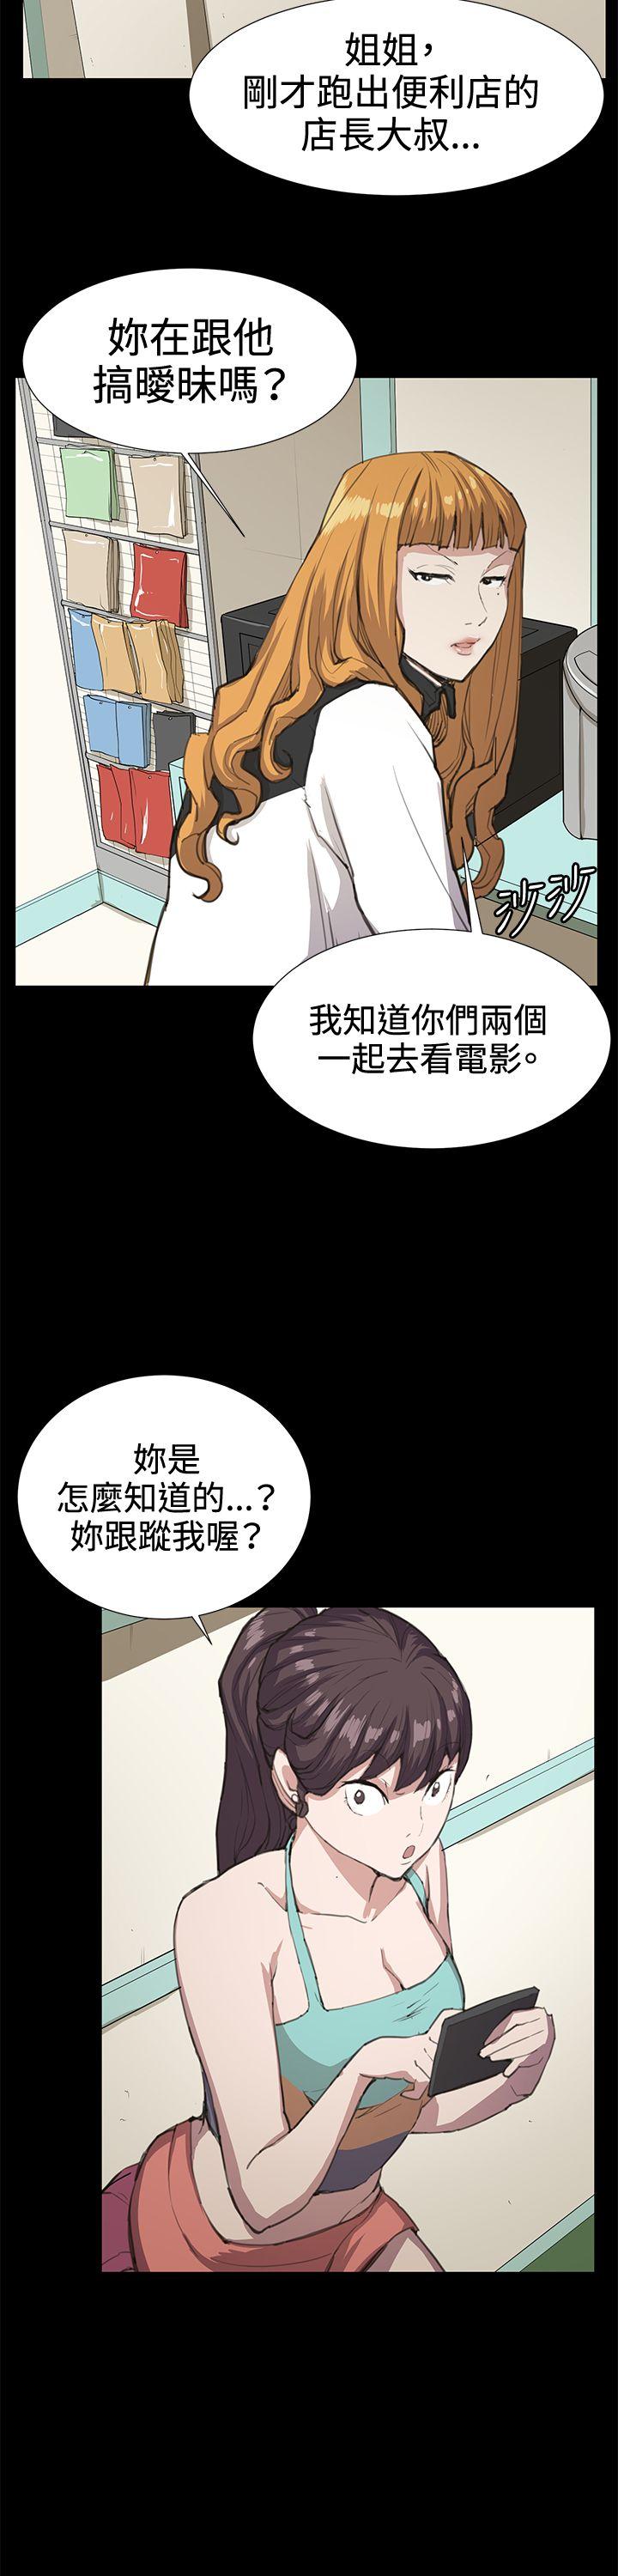 韩国污漫画 深夜便利店 第22话 13